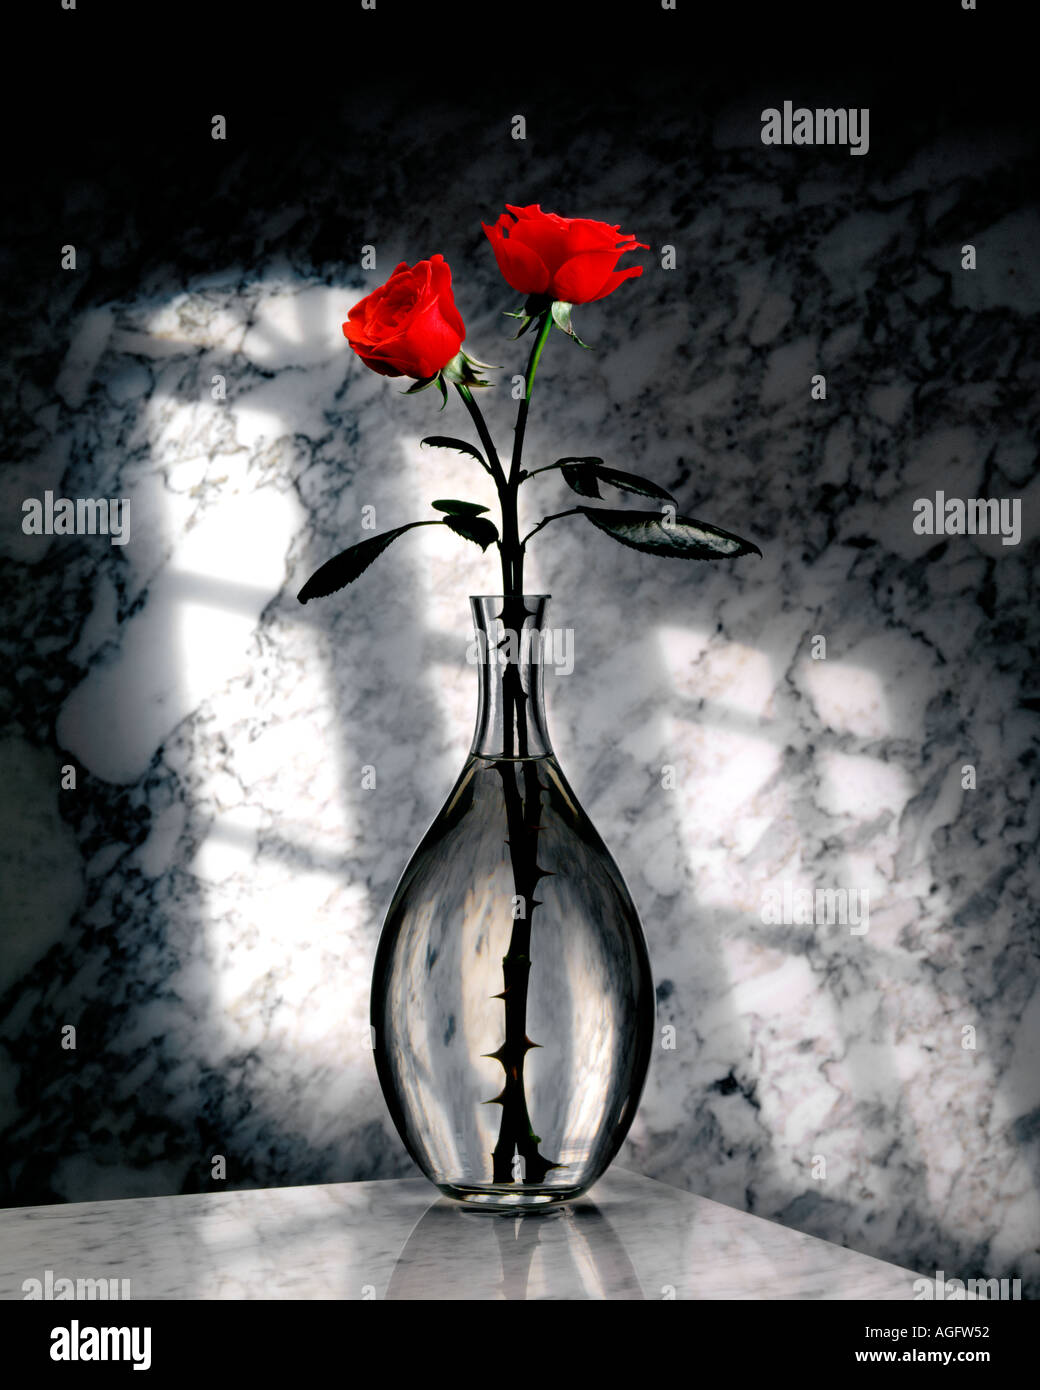 Deux Roses rouges dans un vase en verre sur un fond de marbre 2 roses Banque D'Images